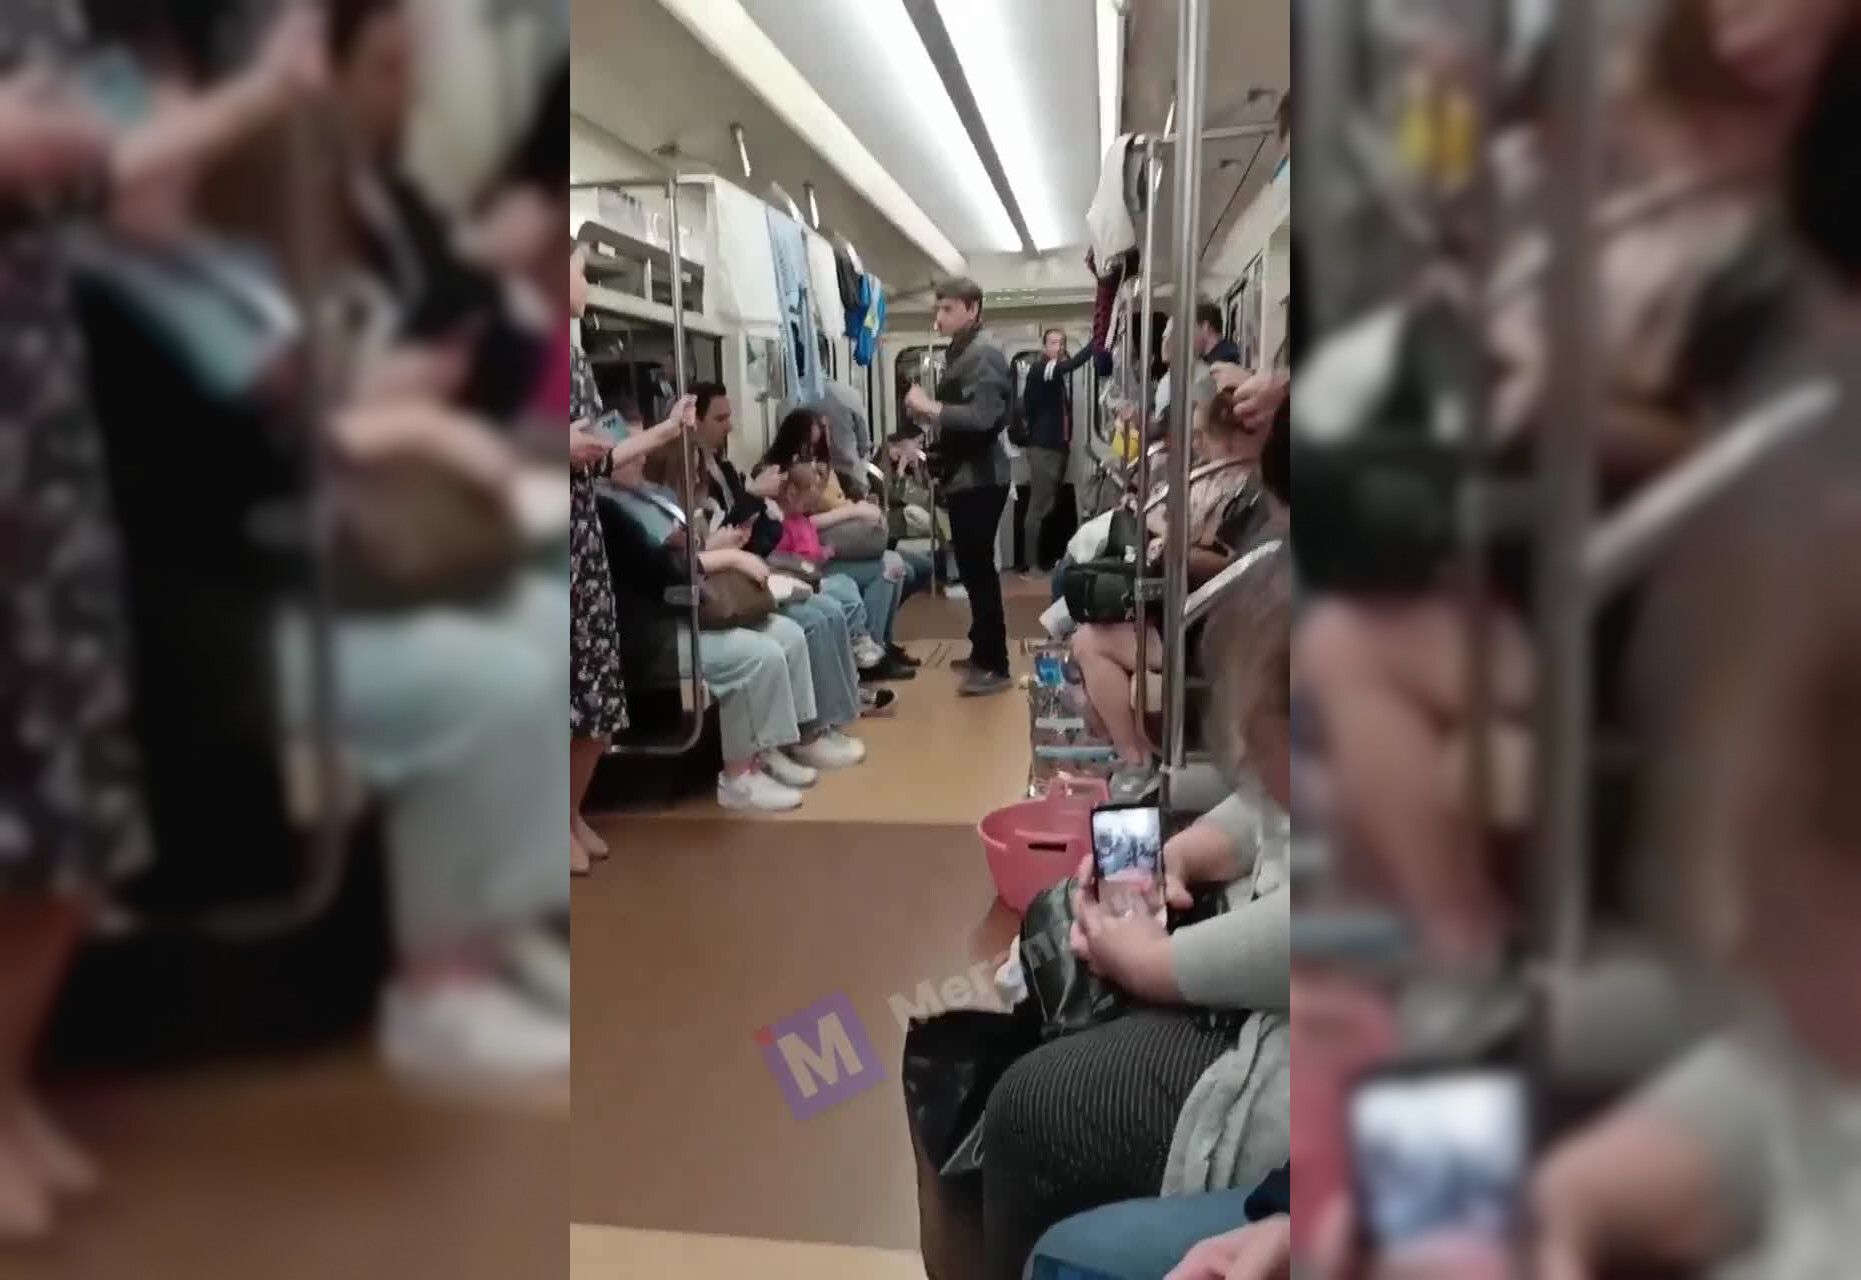 Молодой человек с тазиком развесил белье на поручнях вагона петербургского метро